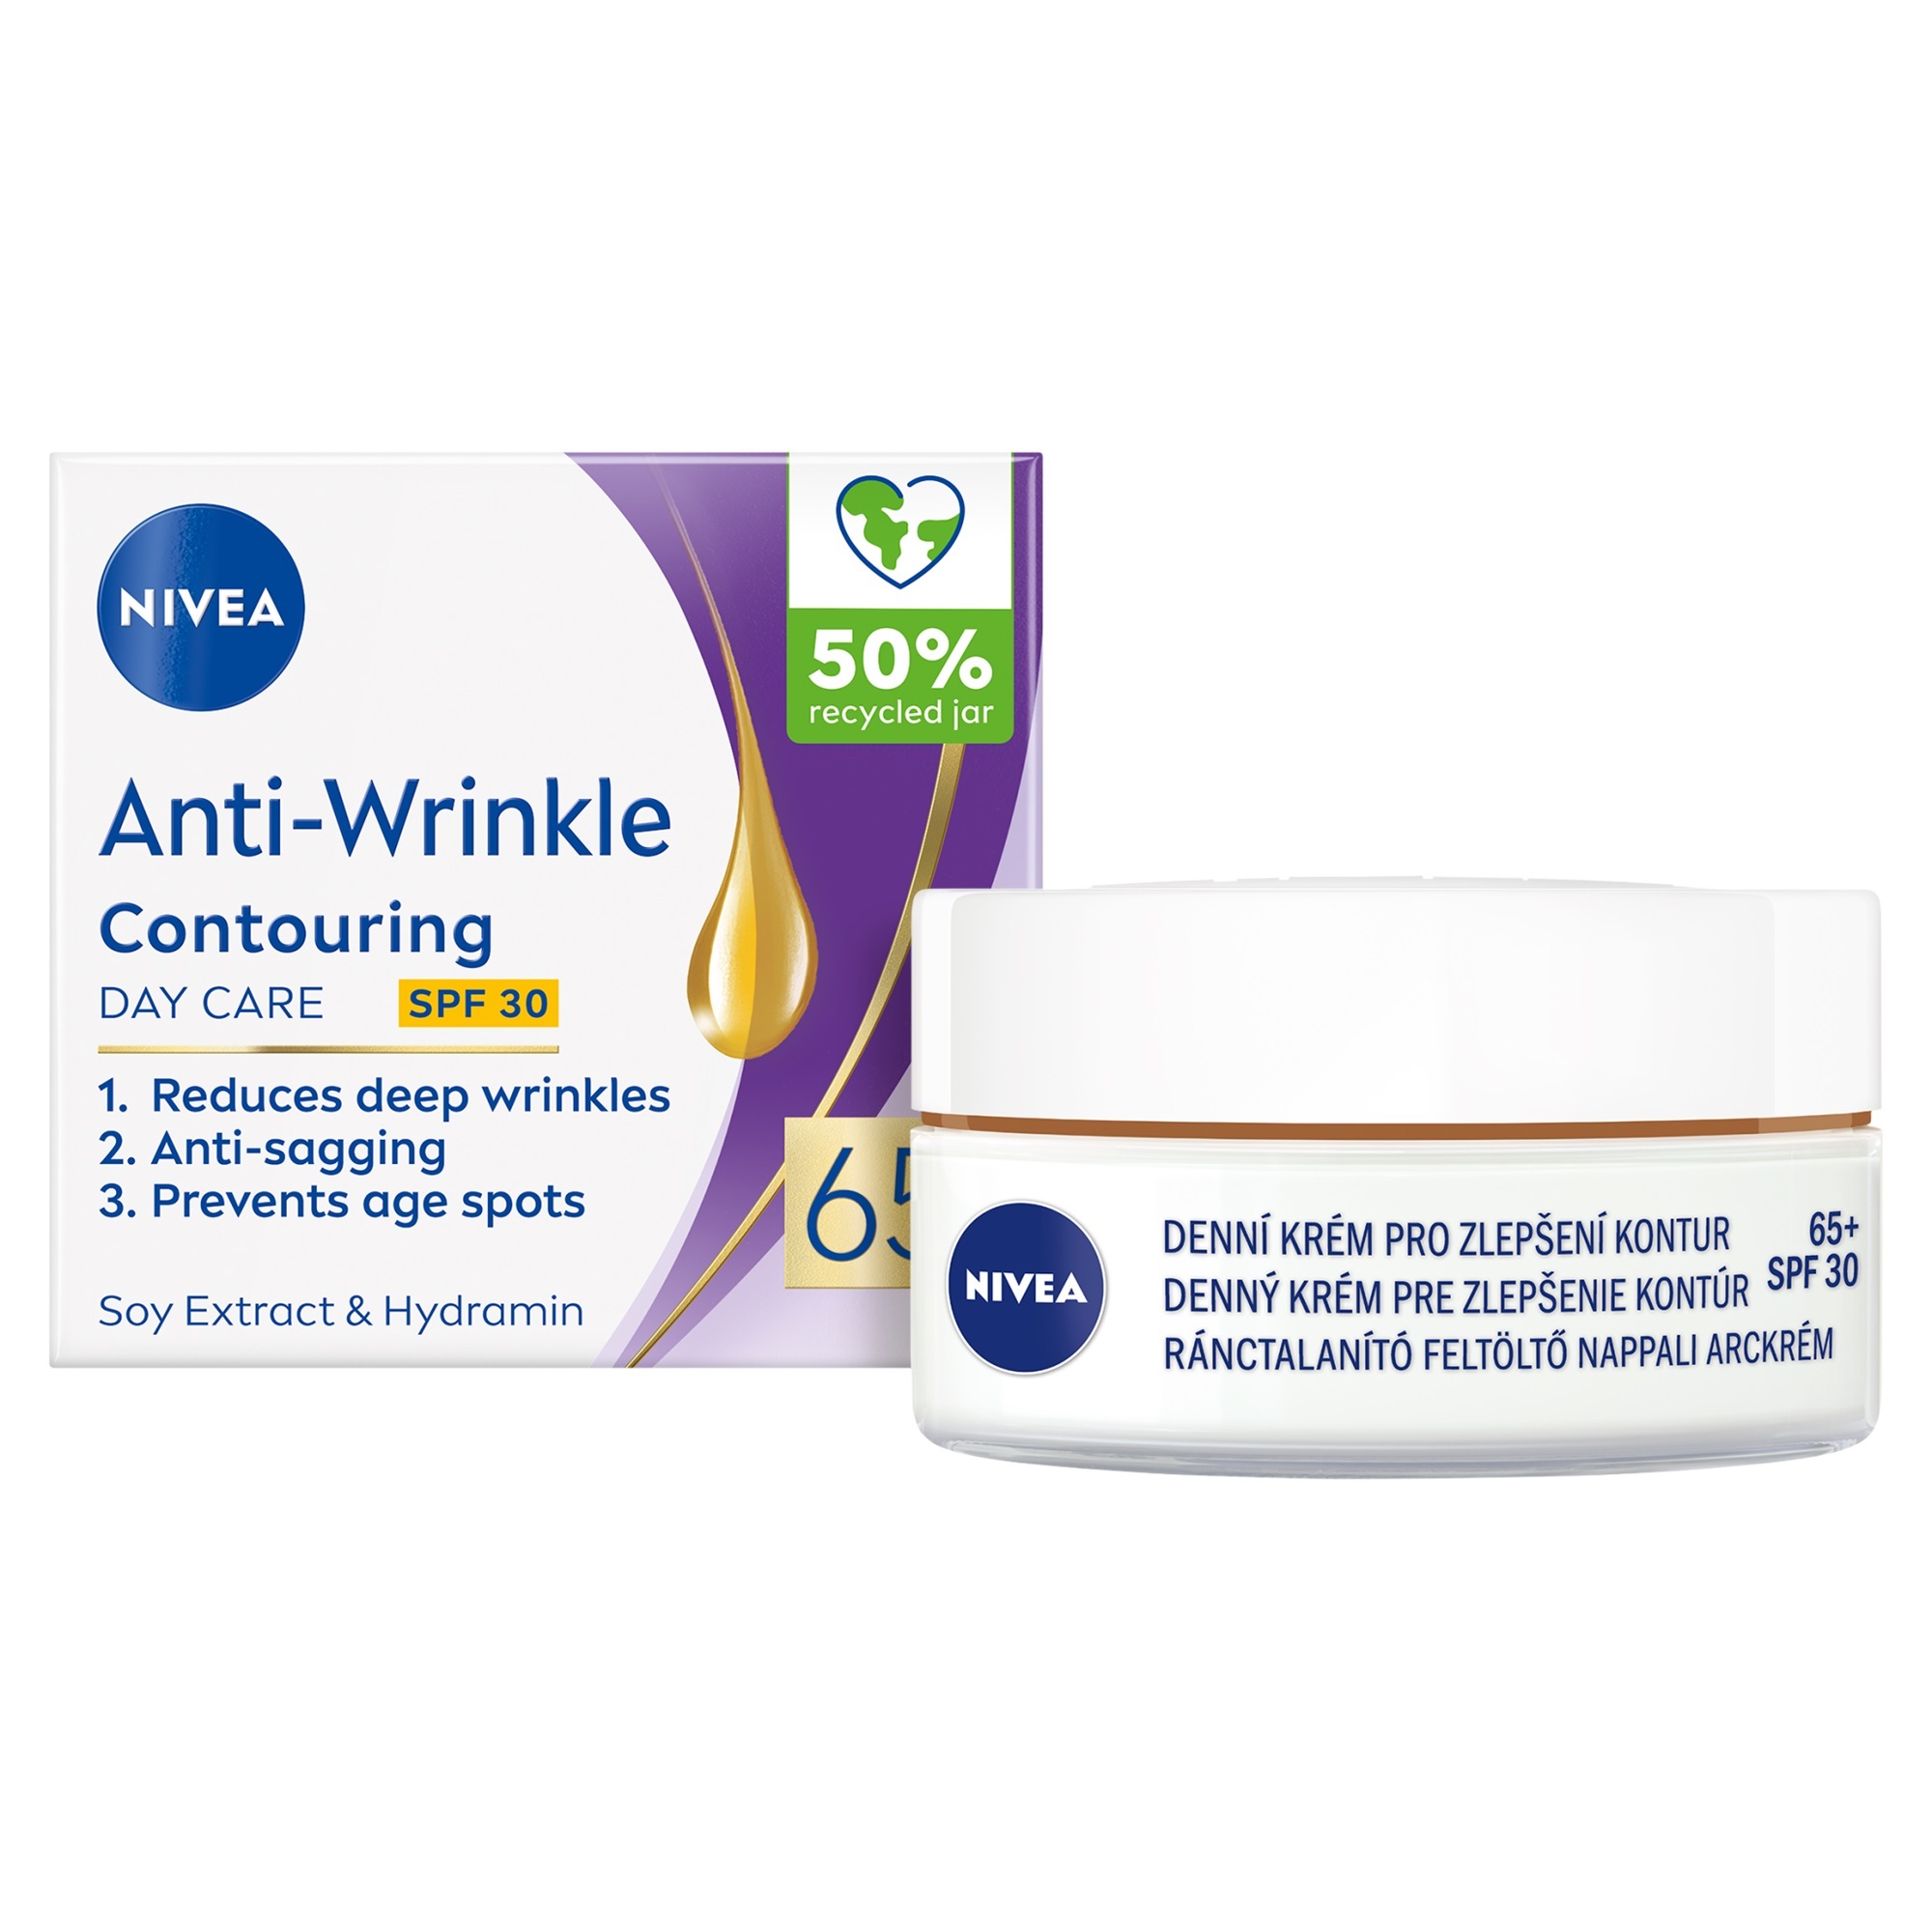 Nivea Denný krém na zlepšenie kontúr 65+ SPF 30 (Anti-Wrinkle Contouring Day Care) 50 ml